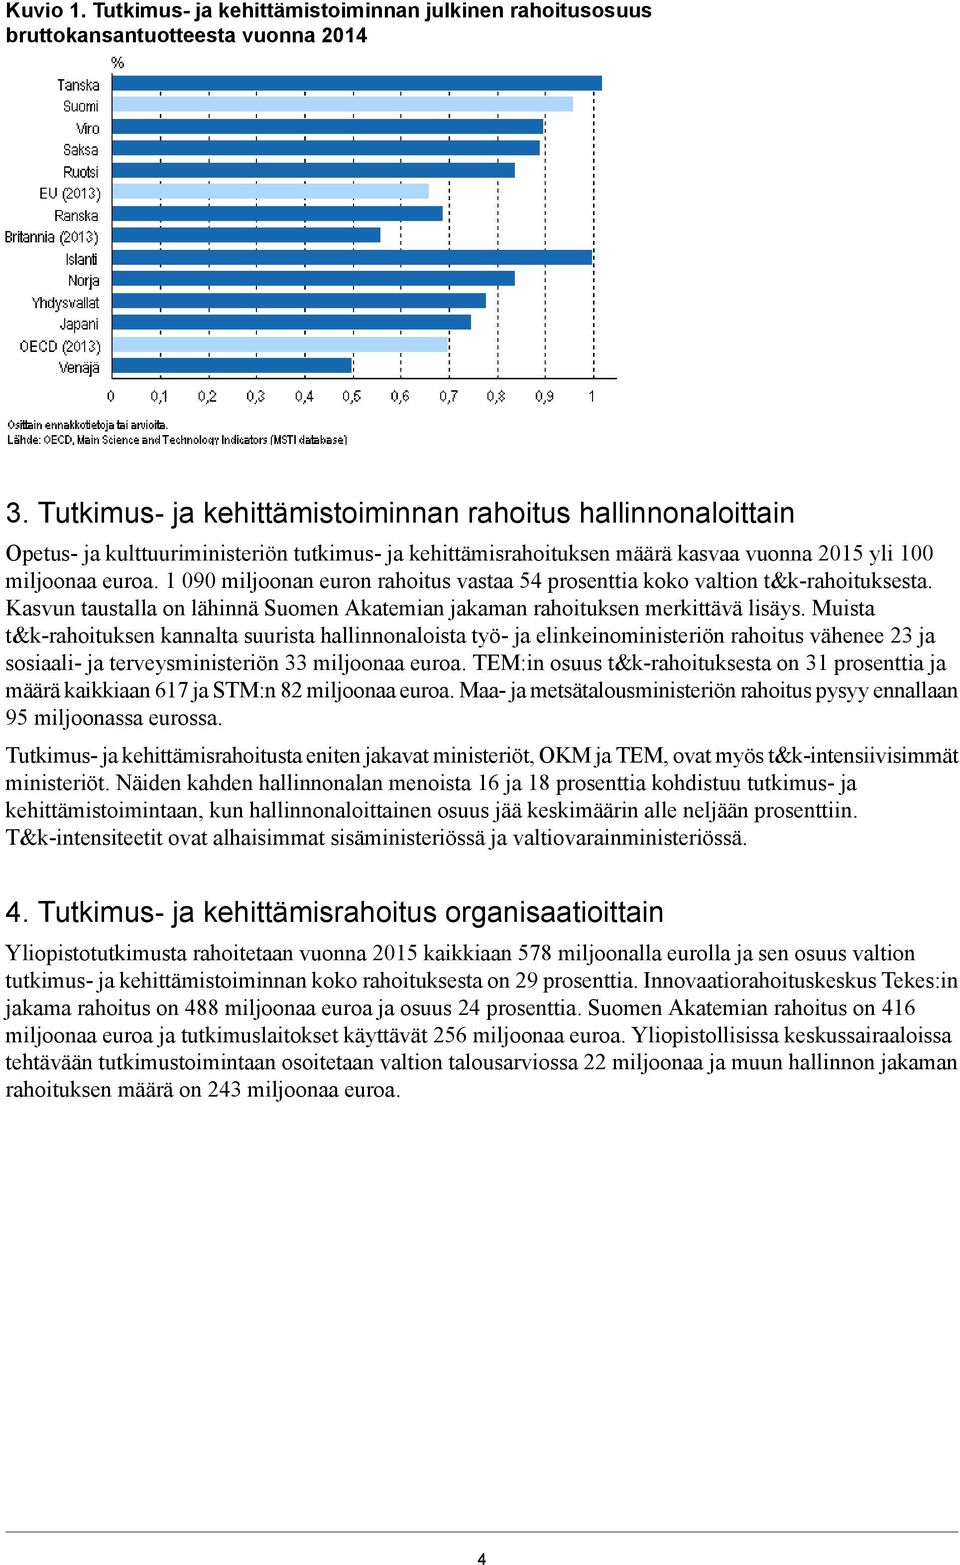 1 090 miljoonan euron rahoitus vastaa 54 prosenttia koko valtion t&k-rahoituksesta. Kasvun taustalla on lähinnä Suomen Akatemian jakaman rahoituksen merkittävä lisäys.